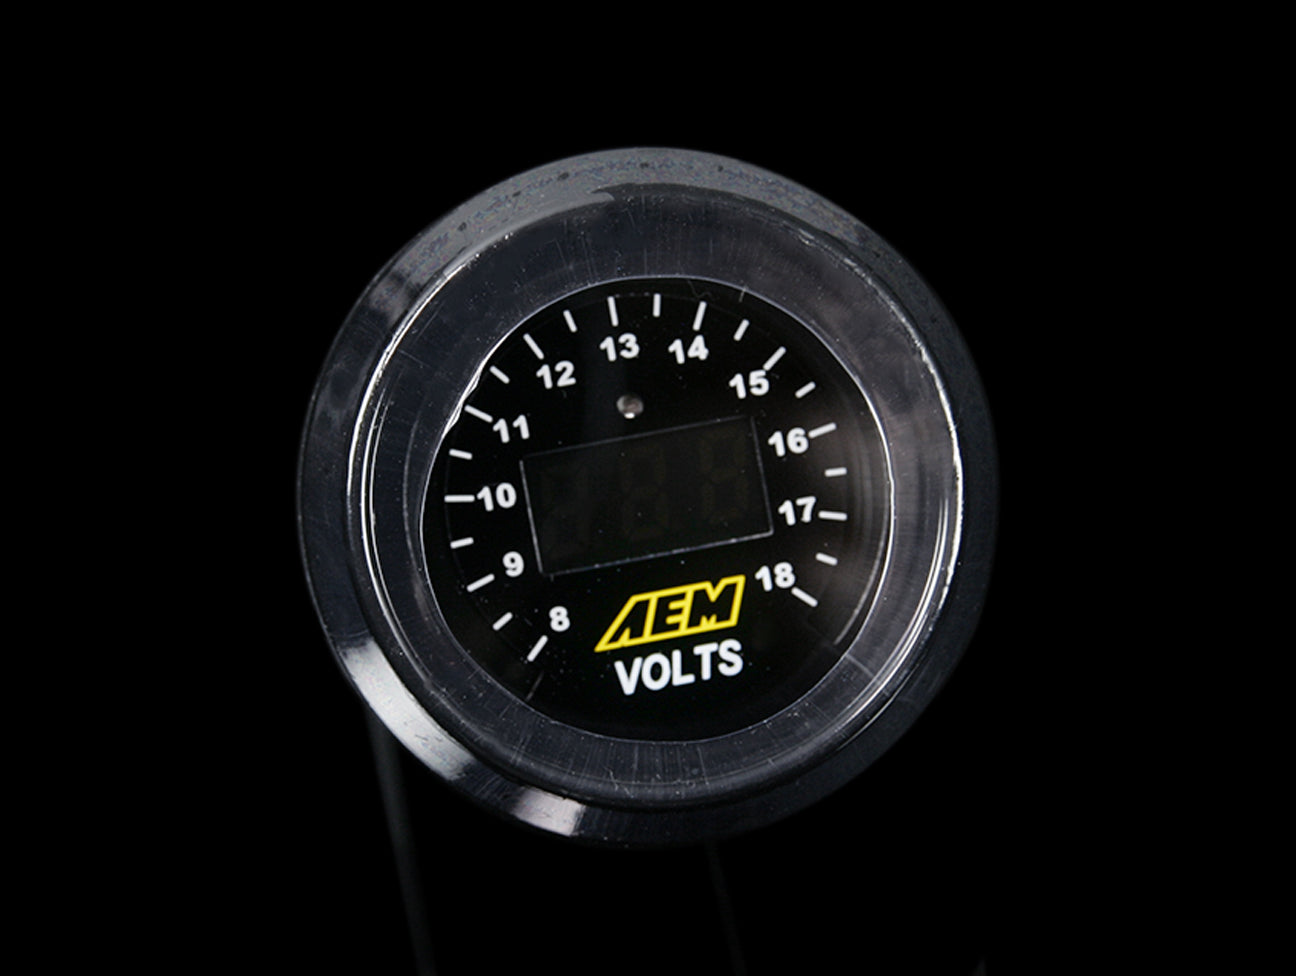 AEM Voltmeter Digital Display Gauge 8-18V